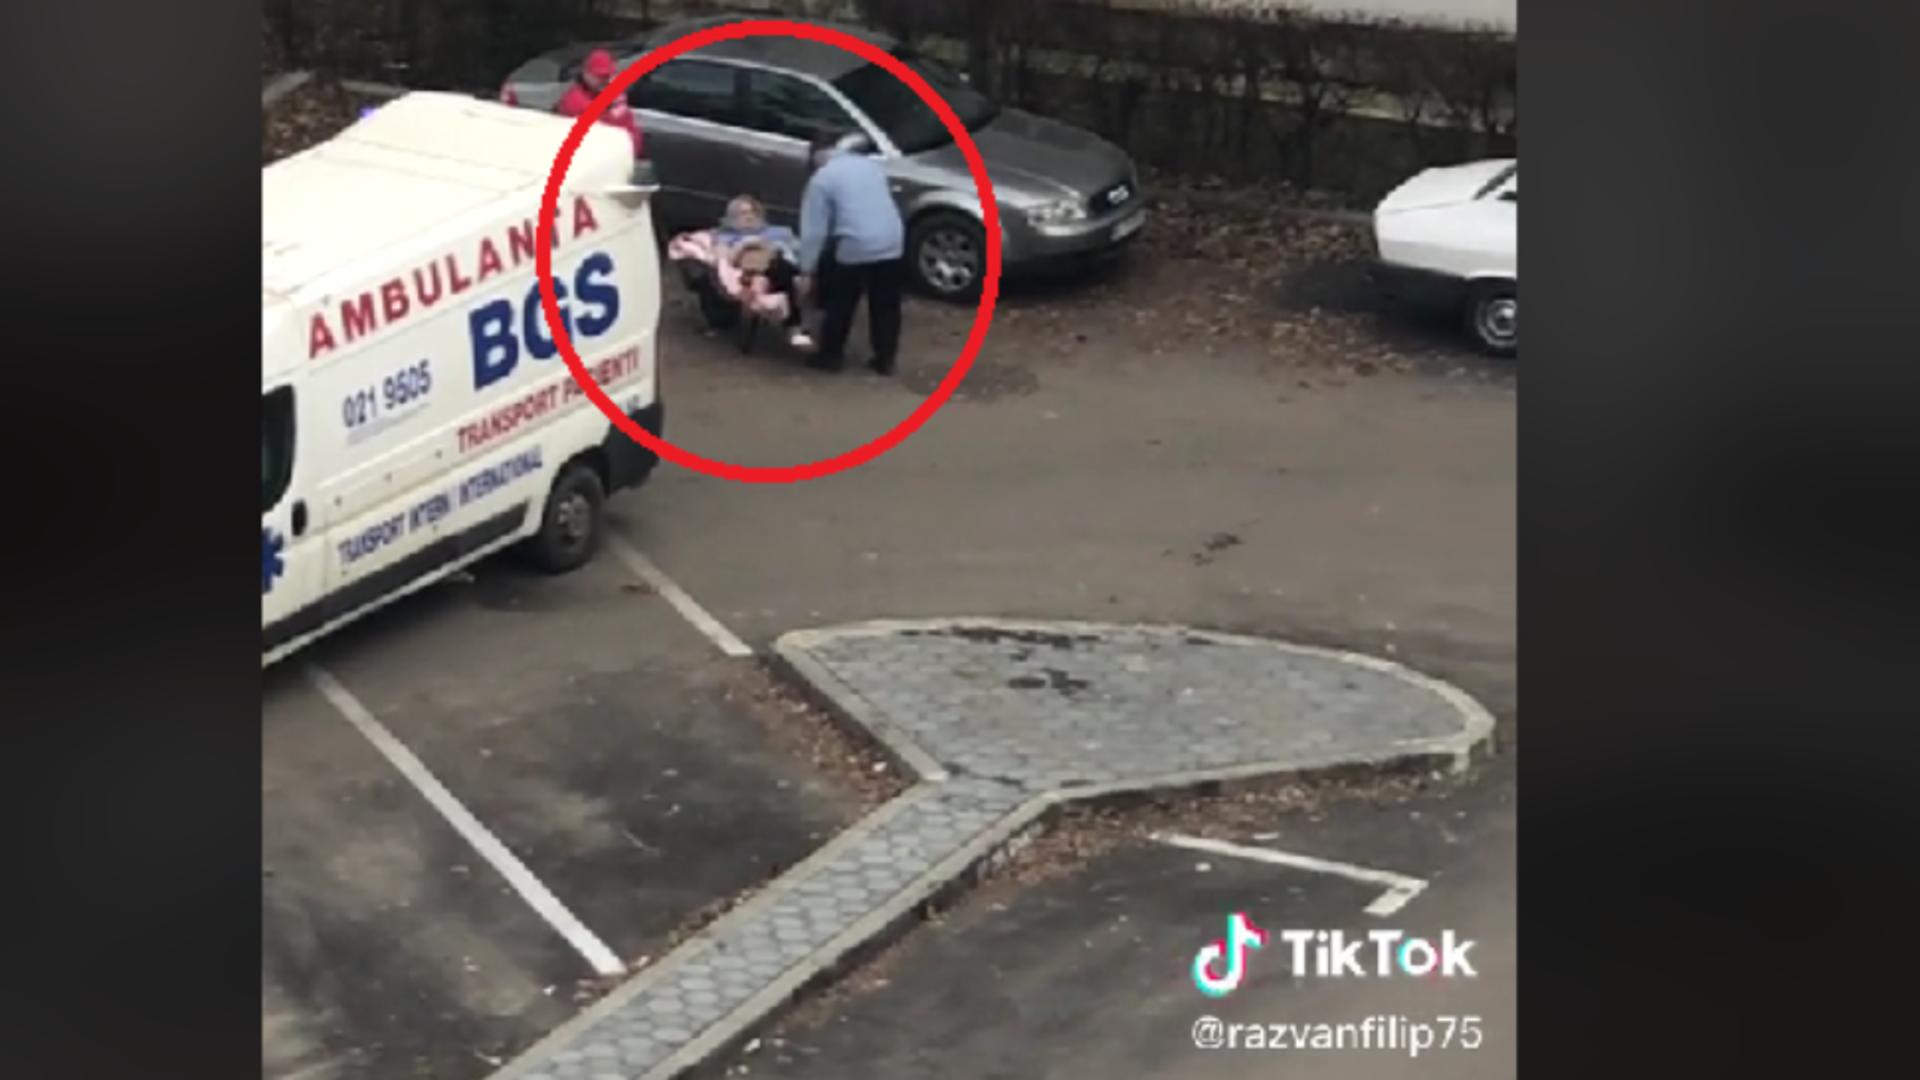 Femeie dusă cu roaba la ambulanță/ Captură video TikTok